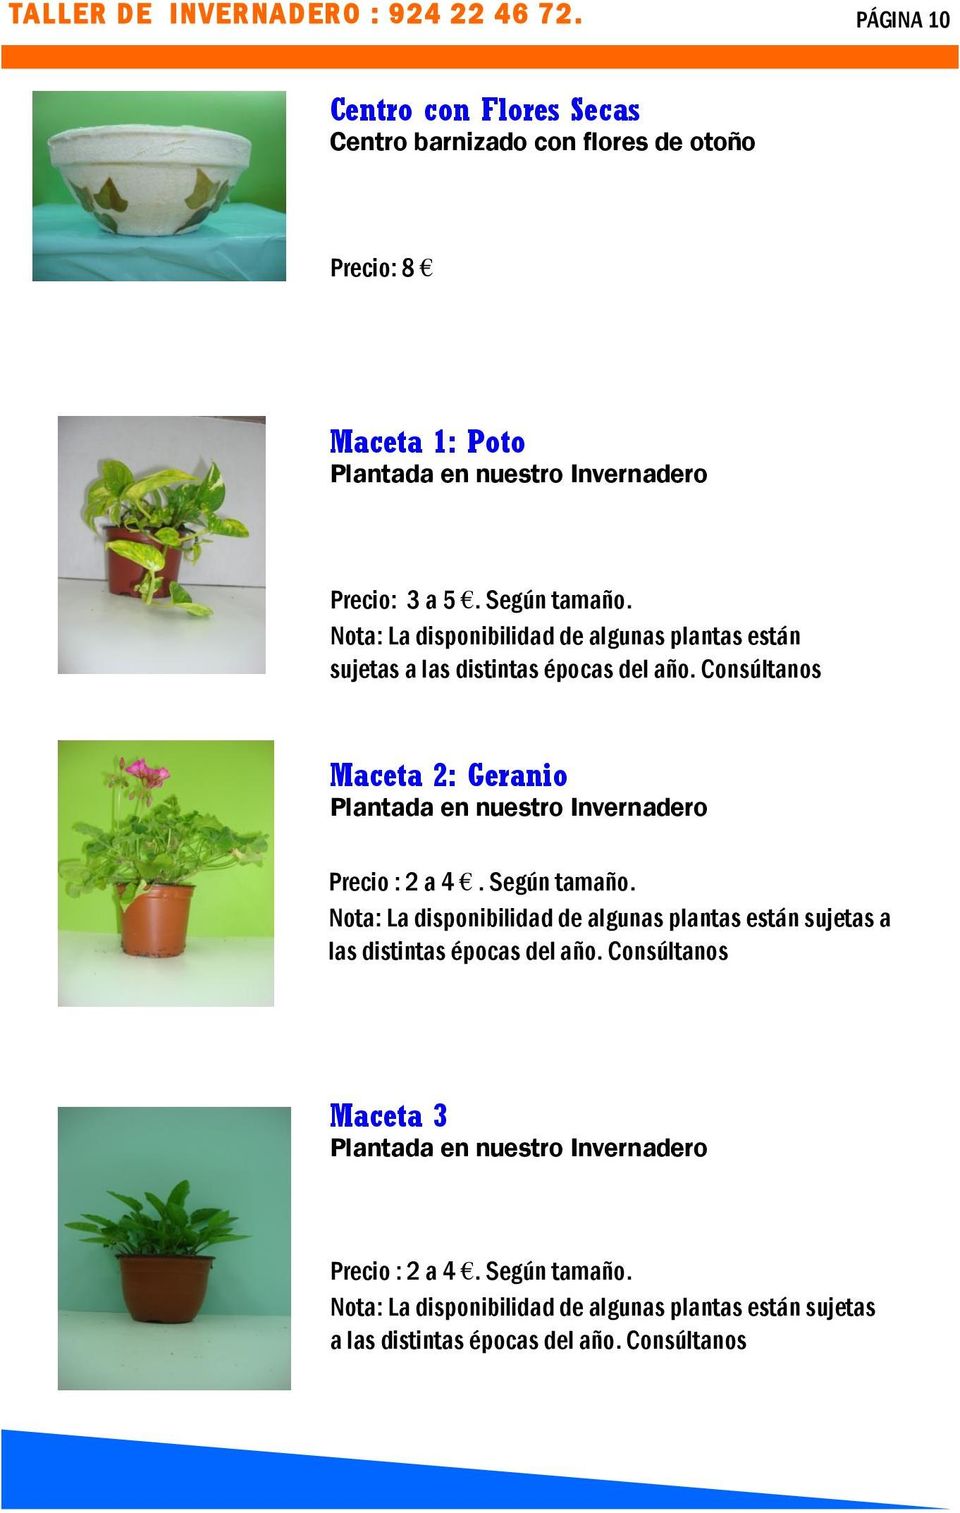 Nota: La disponibilidad de algunas plantas están sujetas a las distintas épocas del año.